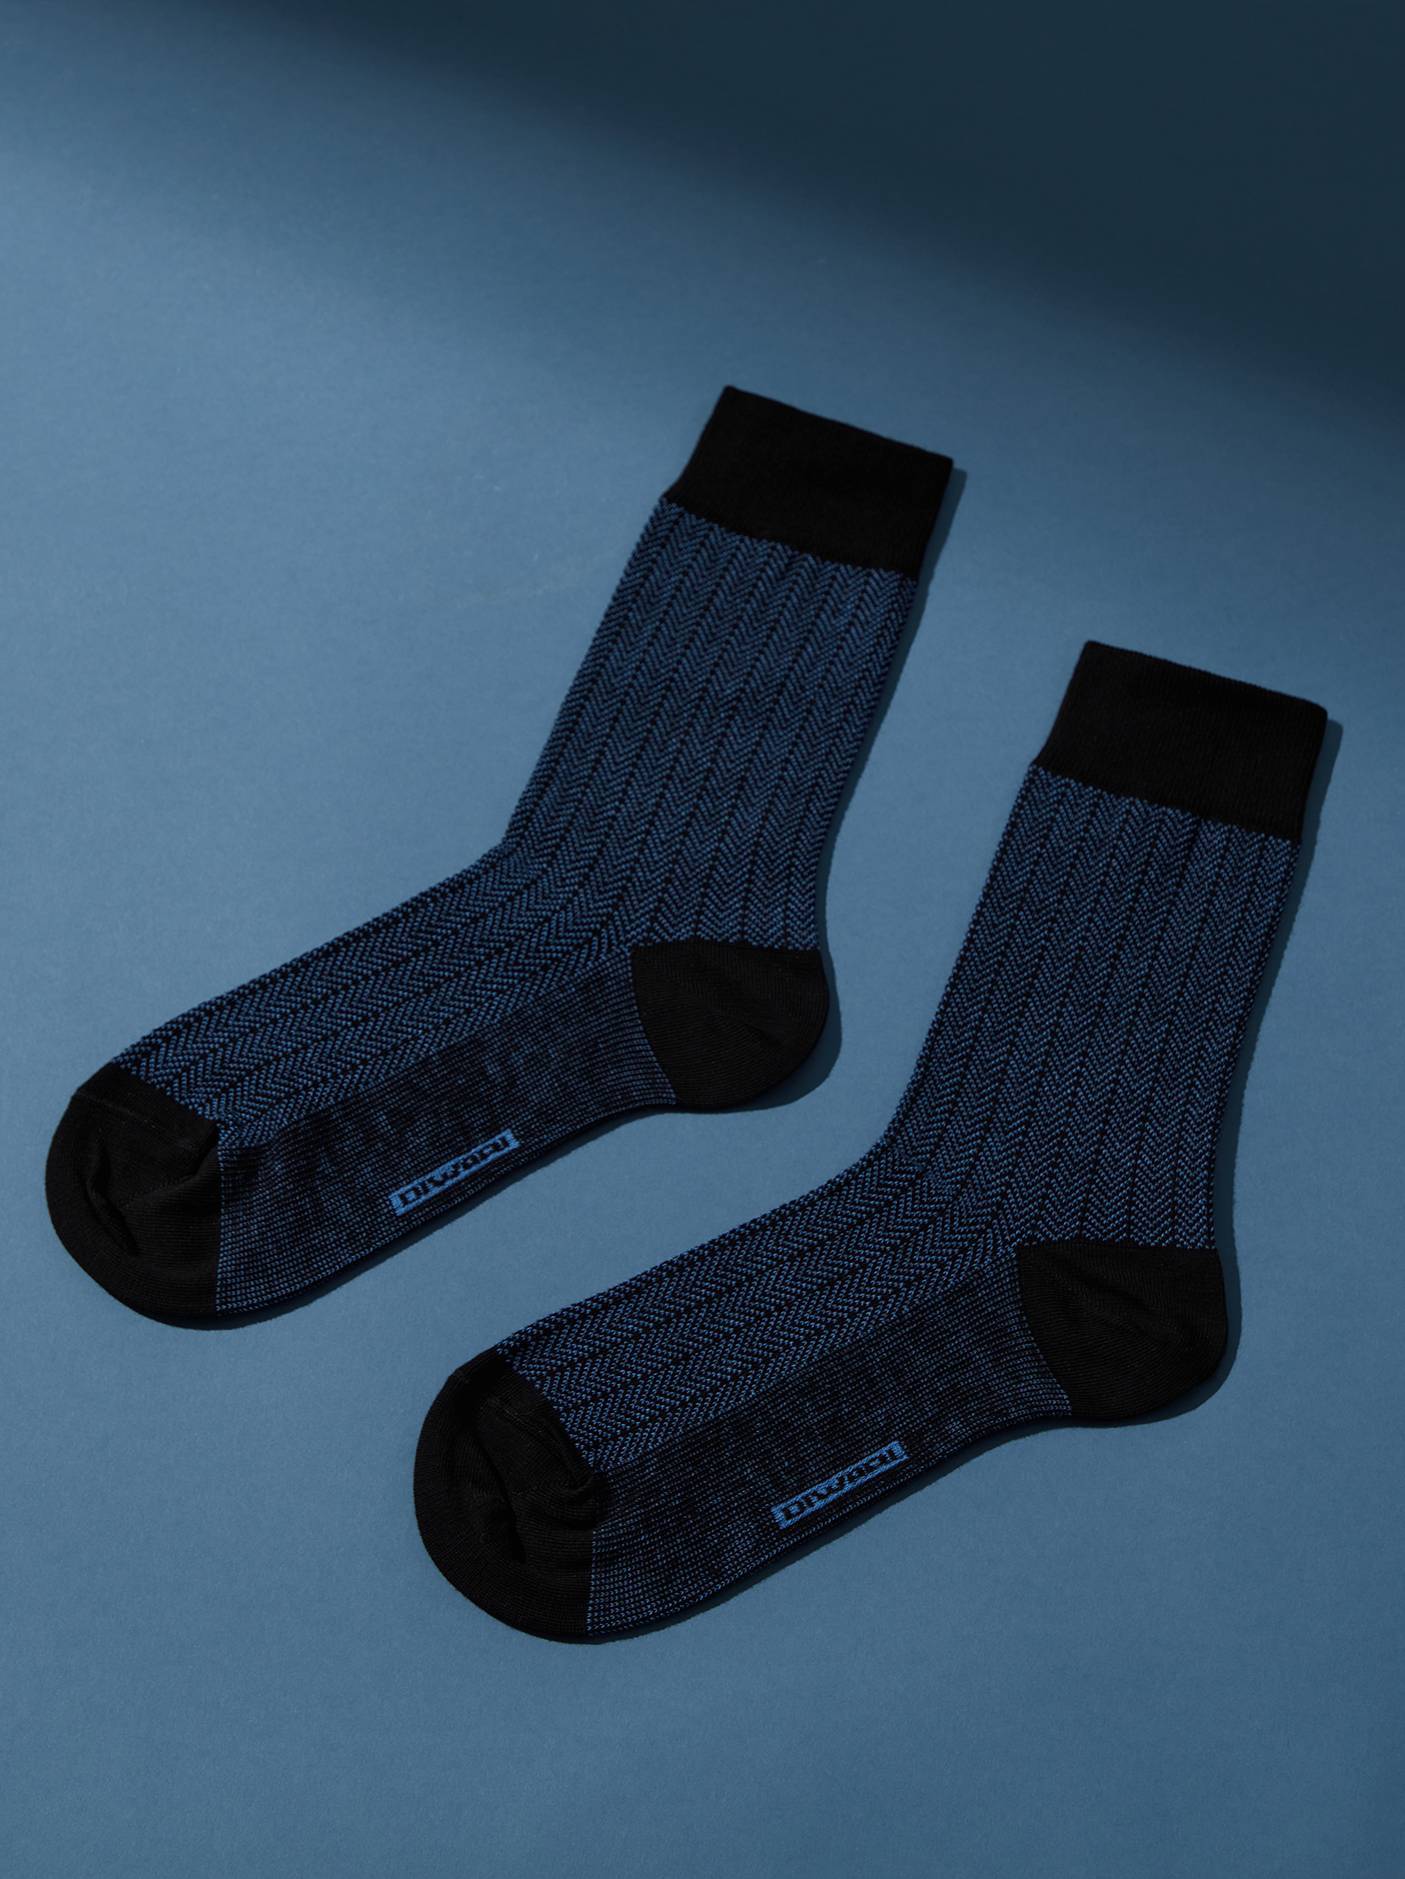 Носки мужские ⭐️ Хлопковые носки CLASSIC ⭐️, Conte ⭐️, Беларусь, черный-синий, хлопок 80%, полиамид 18%, эластан 2%  - купить